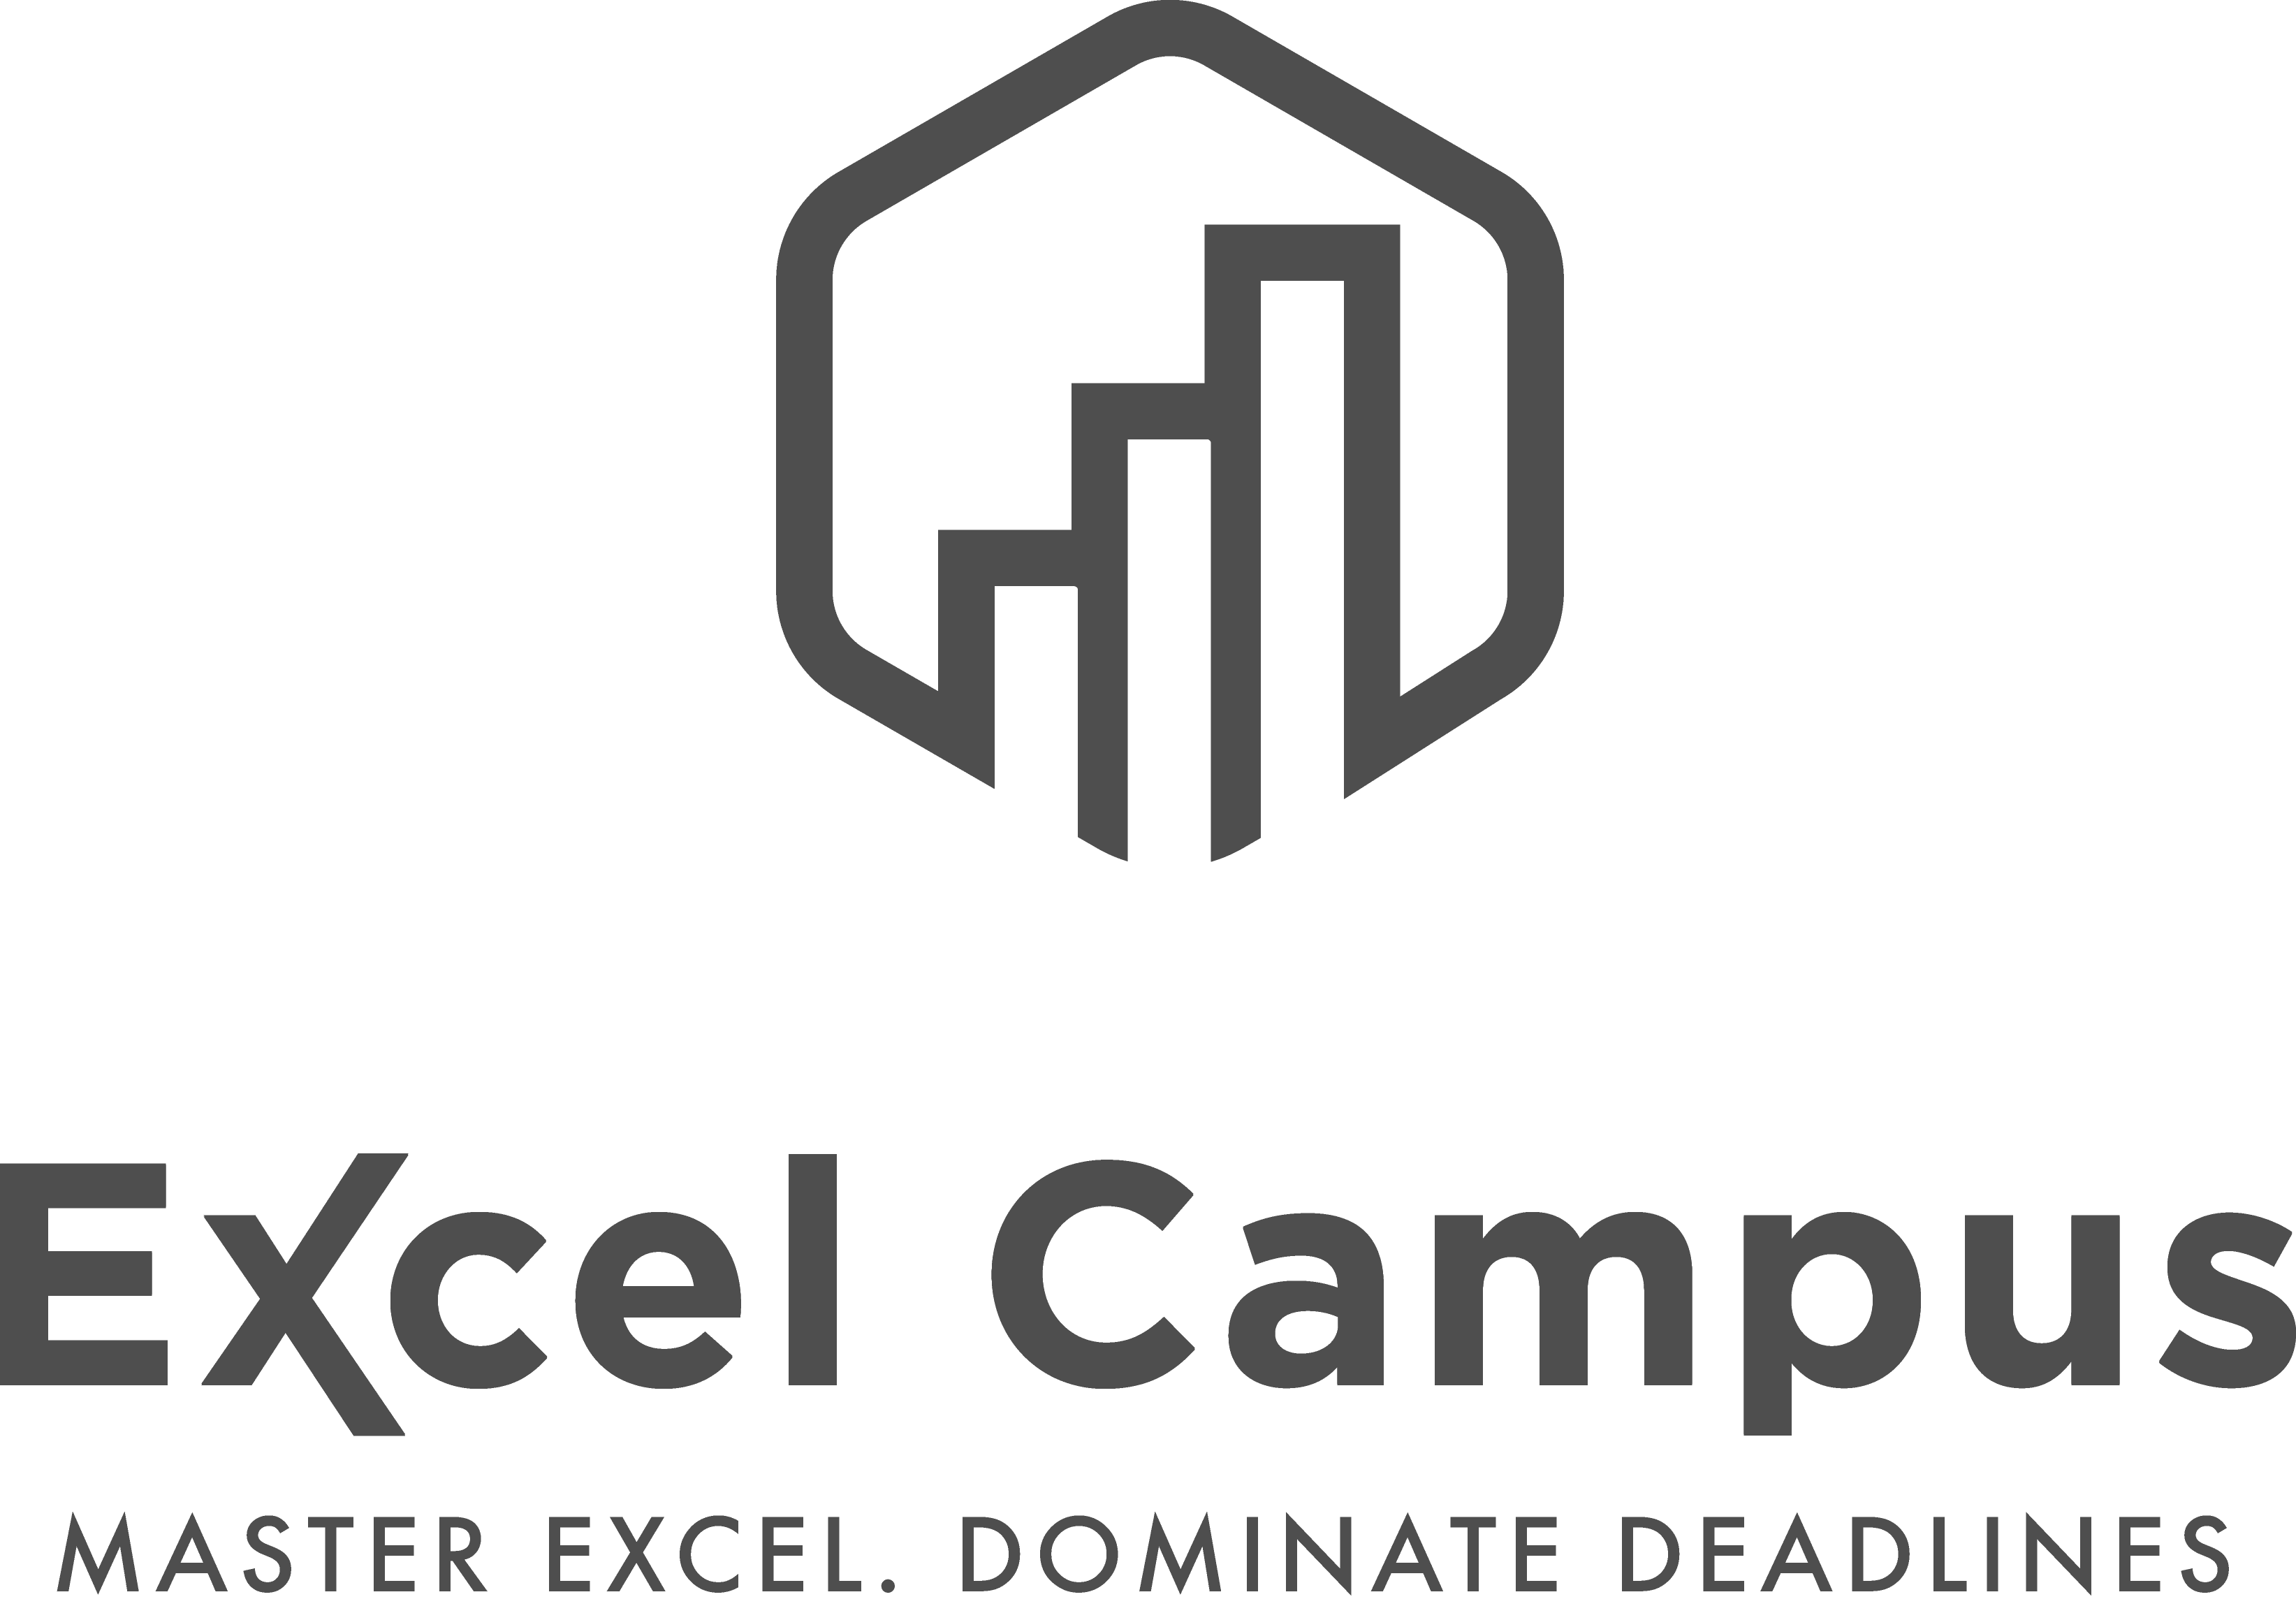 Free Excel Training Webinars & Videos - Excel Campus